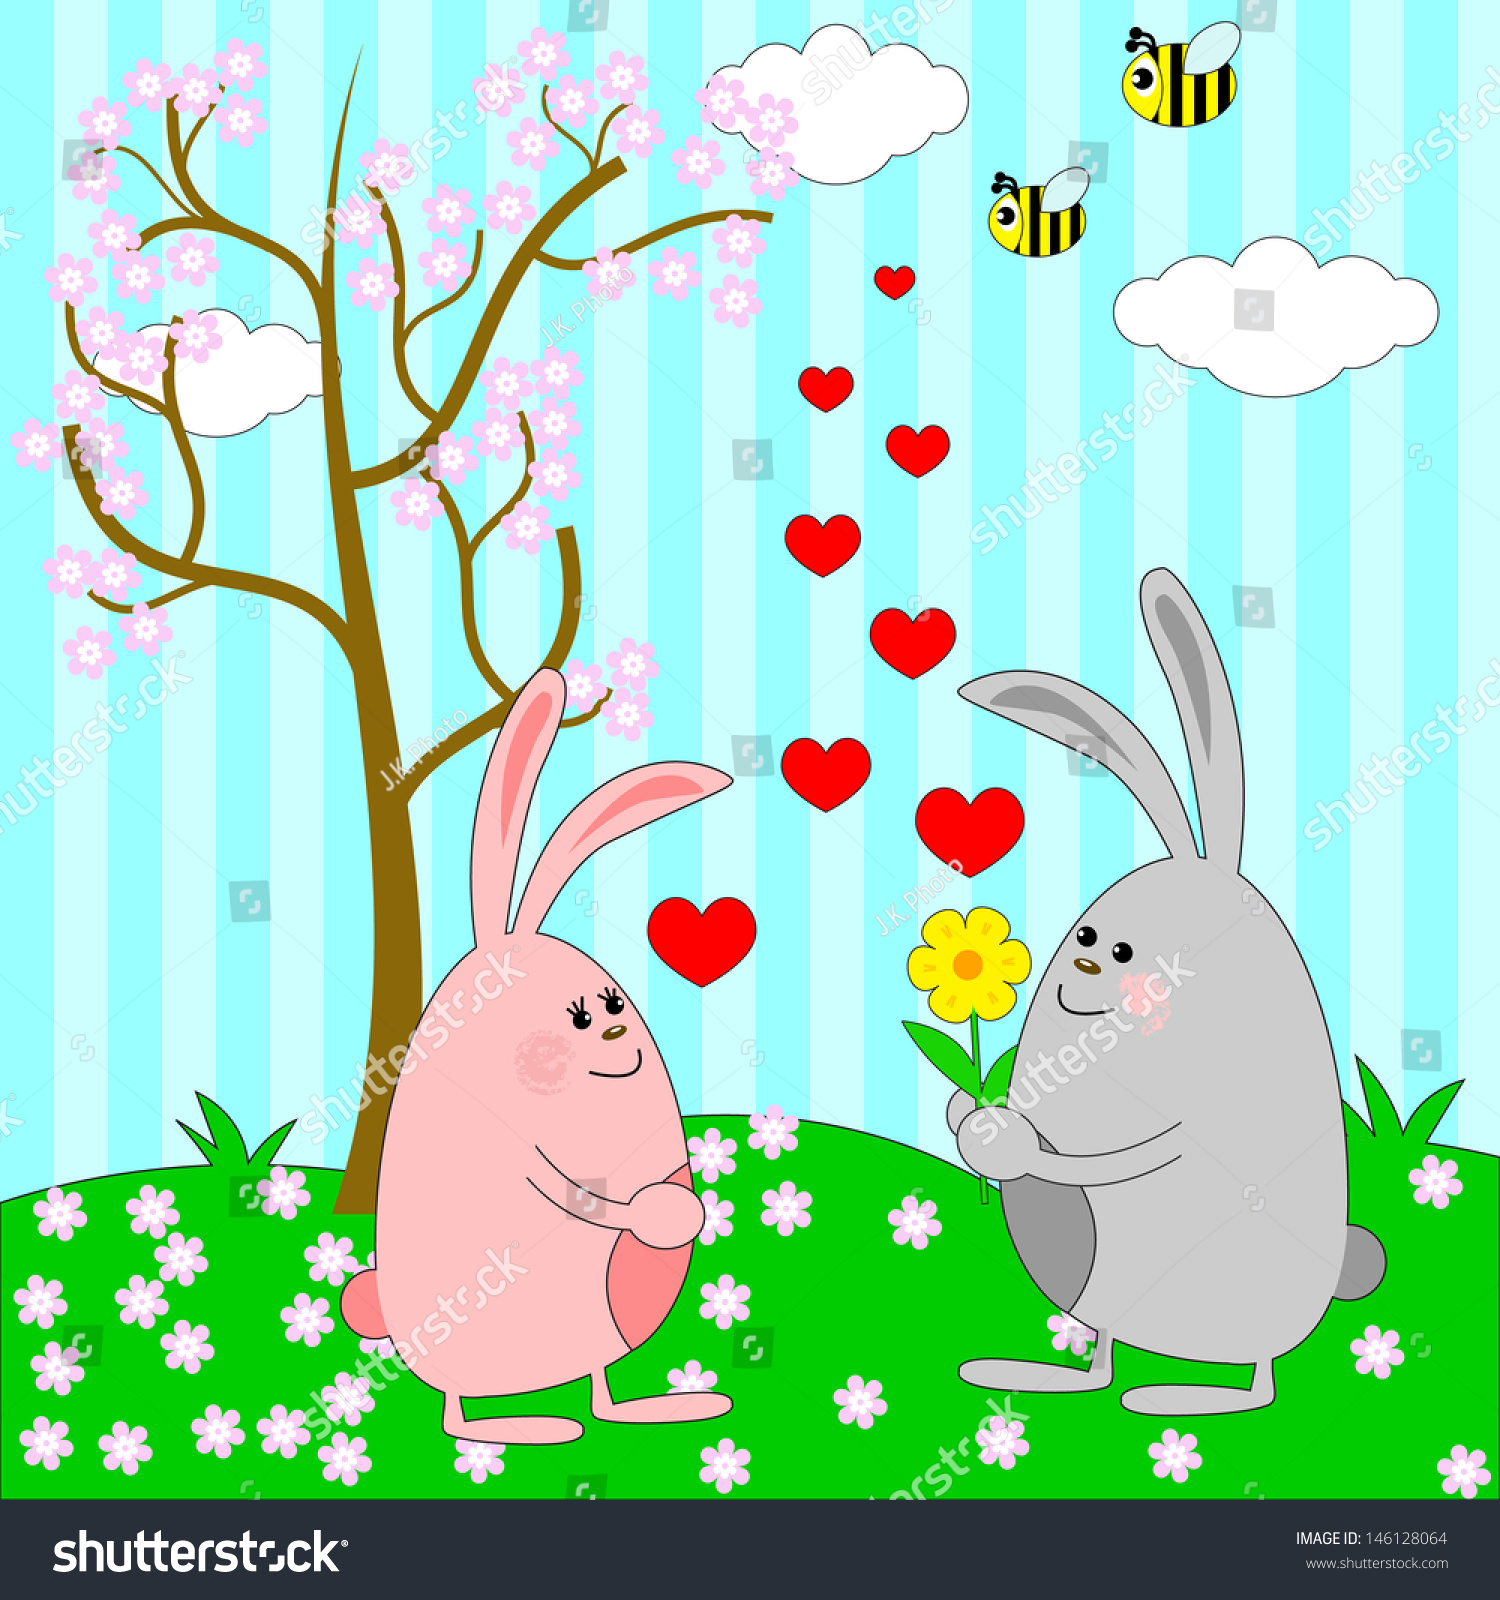 Rabbits in love #146128064